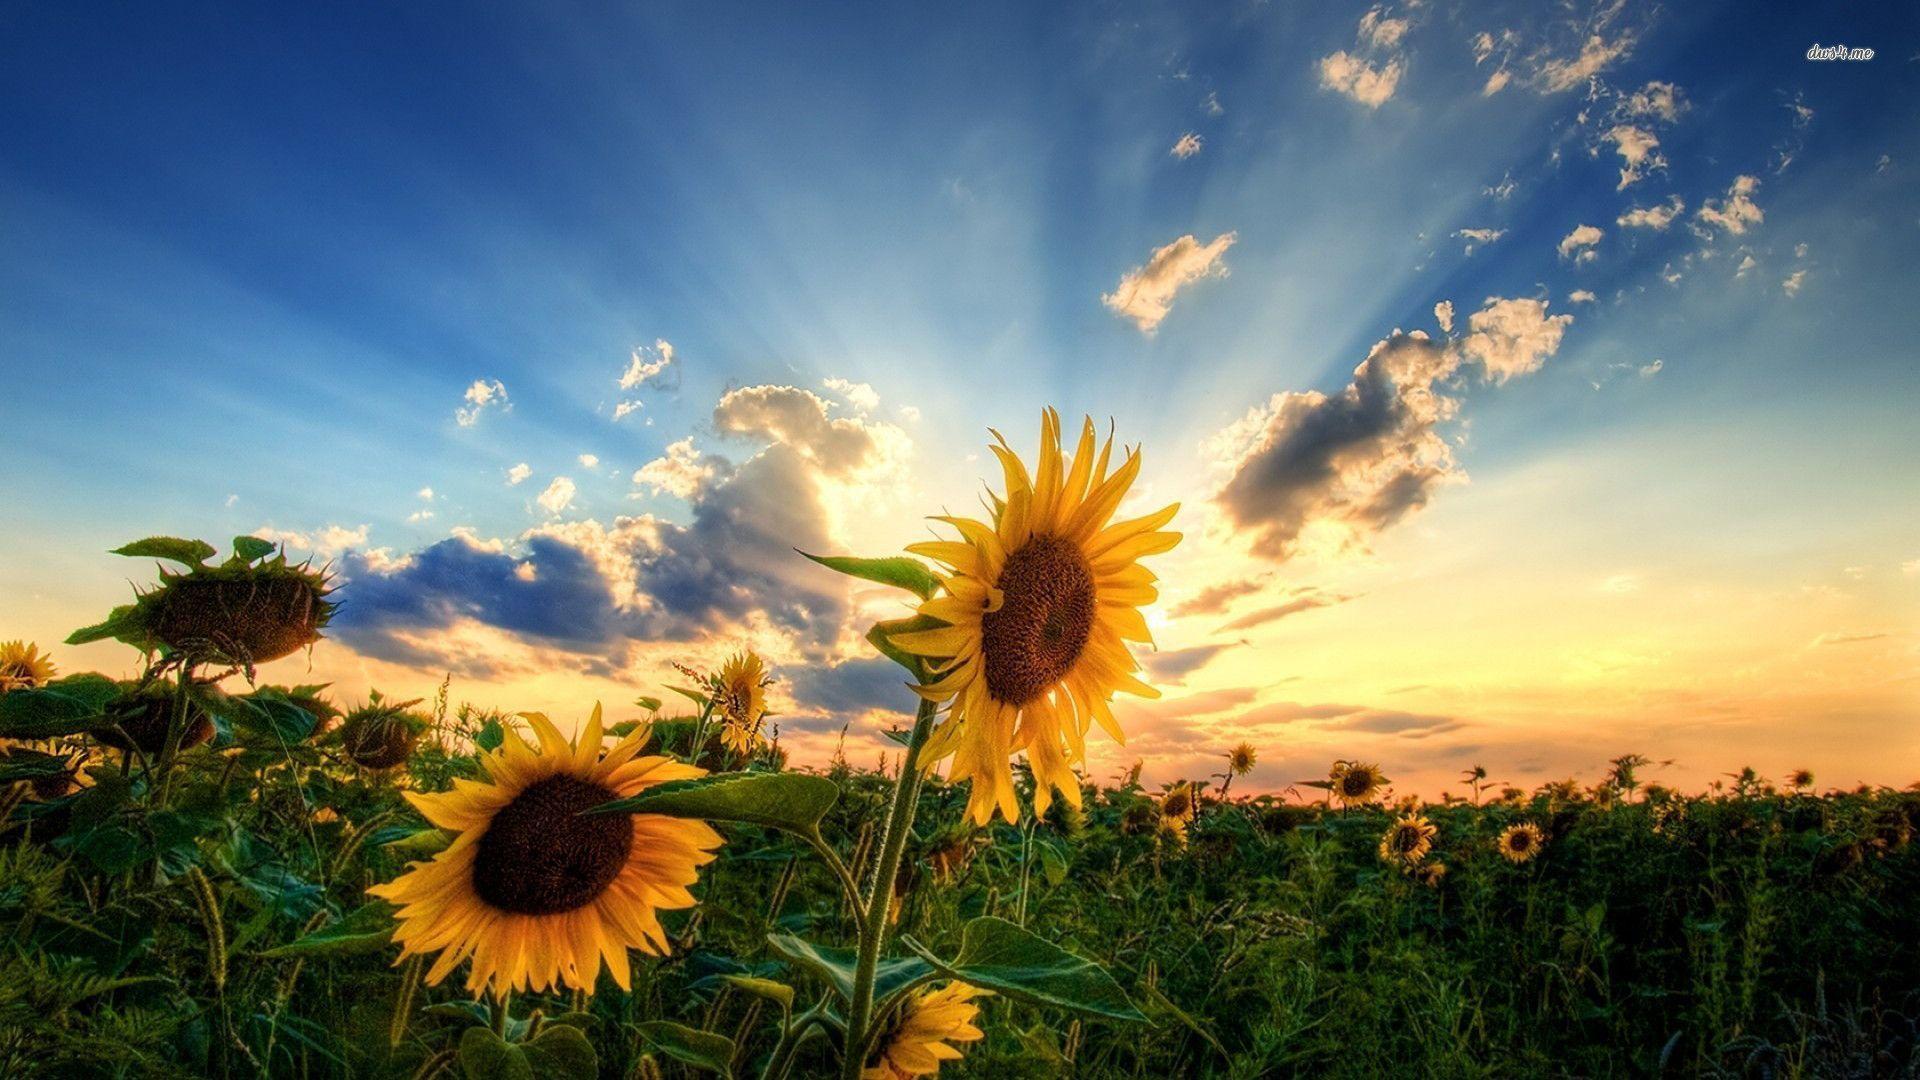 Sunflowers - với sự đẹp độc đáo của mình, đã trở thành nguồn cảm hứng cho nhiều tác phẩm nghệ thuật. Bức ảnh về sunflowers sẽ khiến bạn bị magie bởi nét đẹp rực rỡ, rực rỡ của chúng. Hãy để tâm hồn mình được sưởi ấm bởi ánh nắng và hoa tươi.